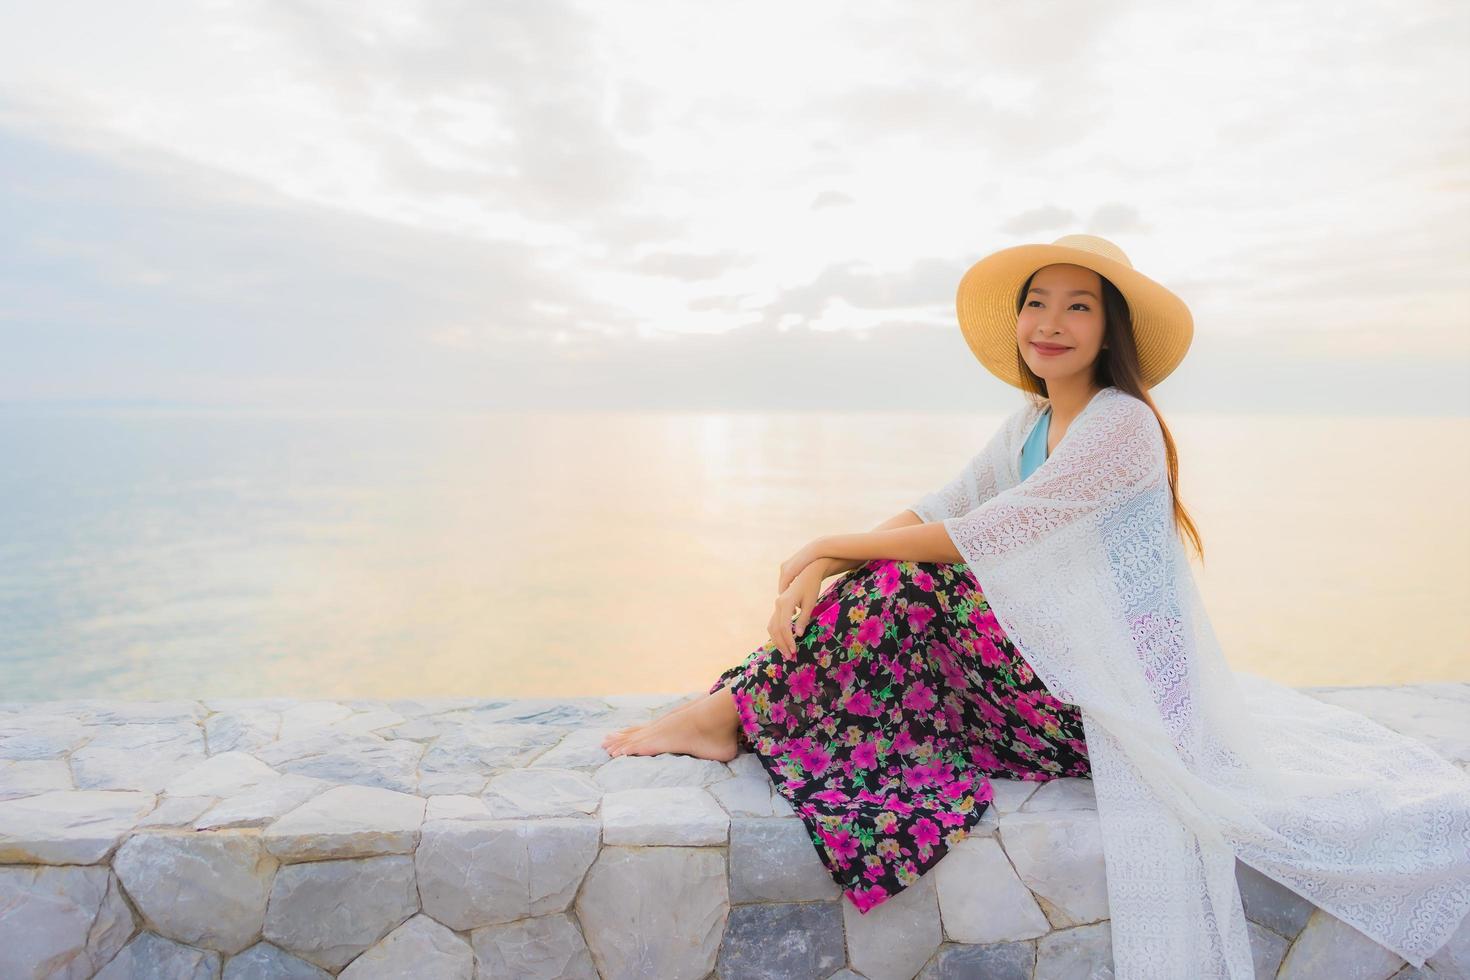 retrato lindas jovens mulheres asiáticas sorriso feliz relaxe em torno do mar, praia foto